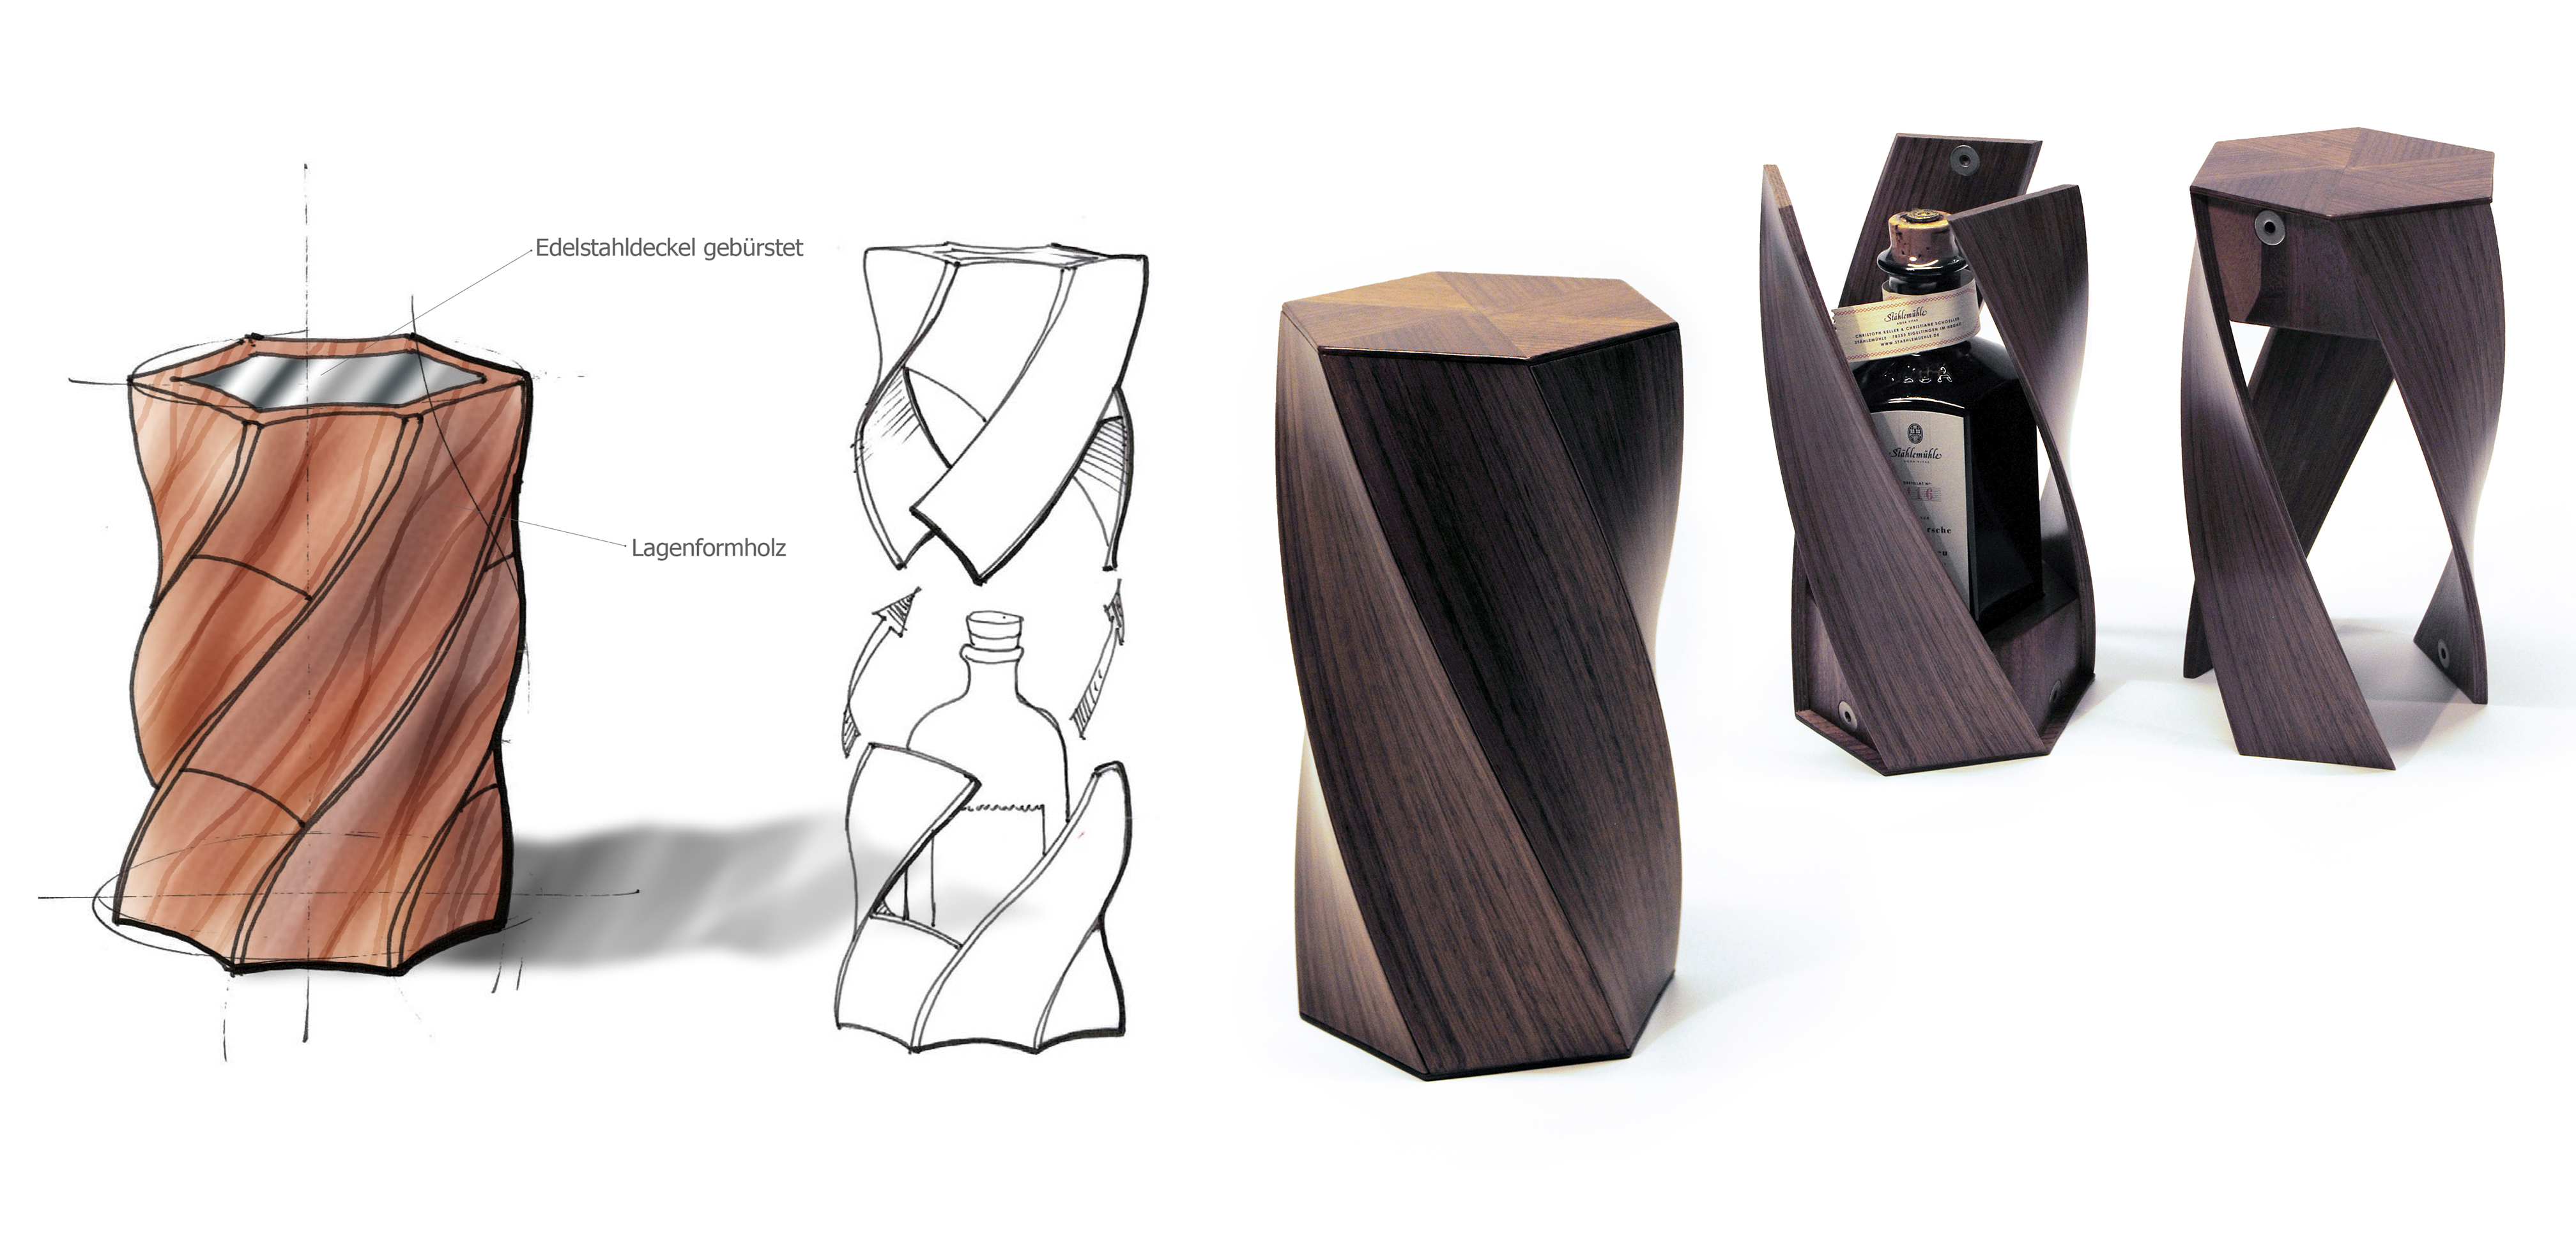 Bensch Horezky Design und Innenarchitekturleistungen - wie gezeichnet so gebaut - Helix Holzverpackung Packaging 3D-Formen.jpg